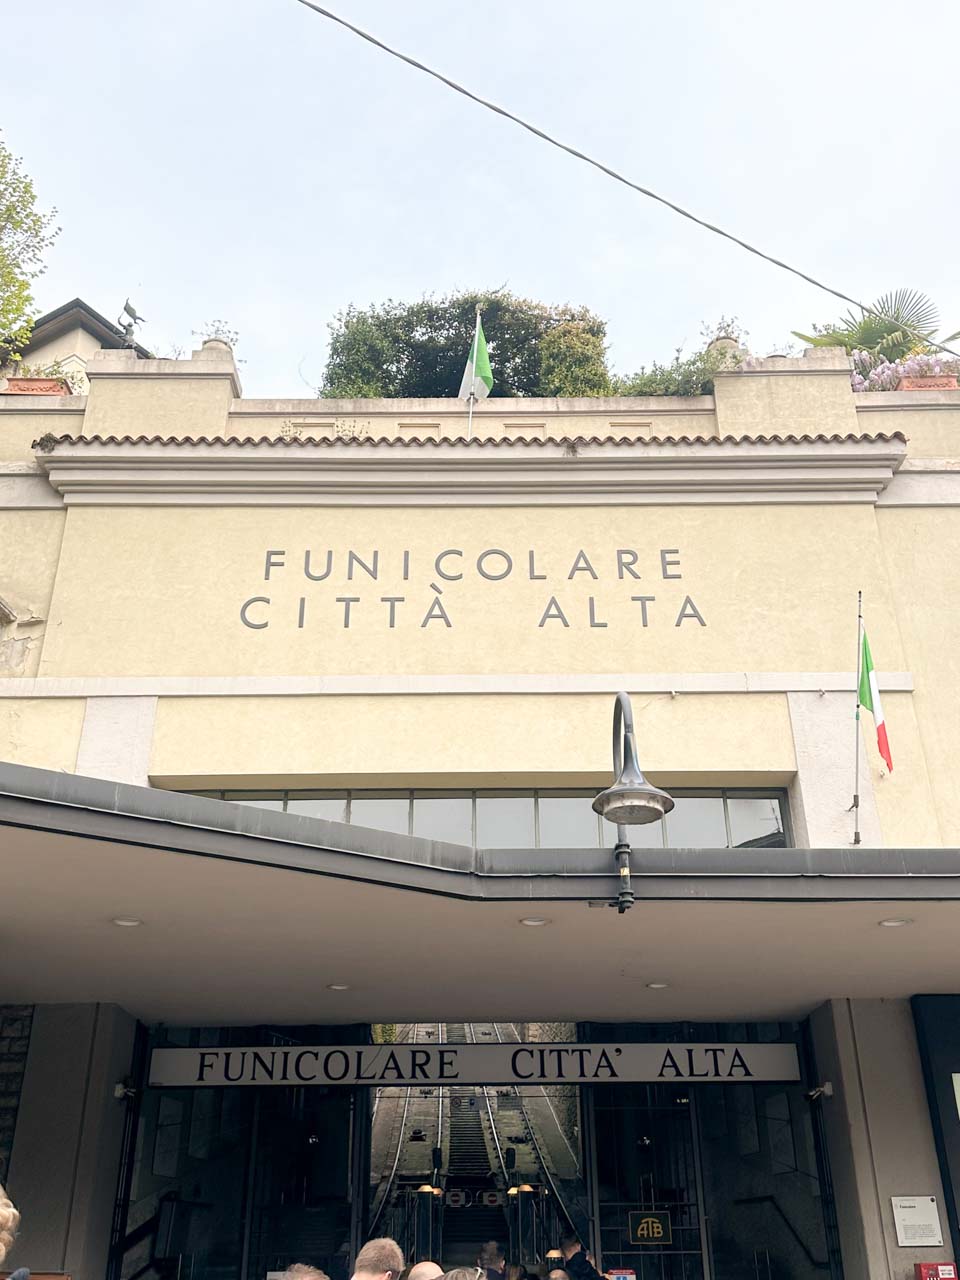 The entrance to the Funicolare Città Alta in Bergamo, Italy